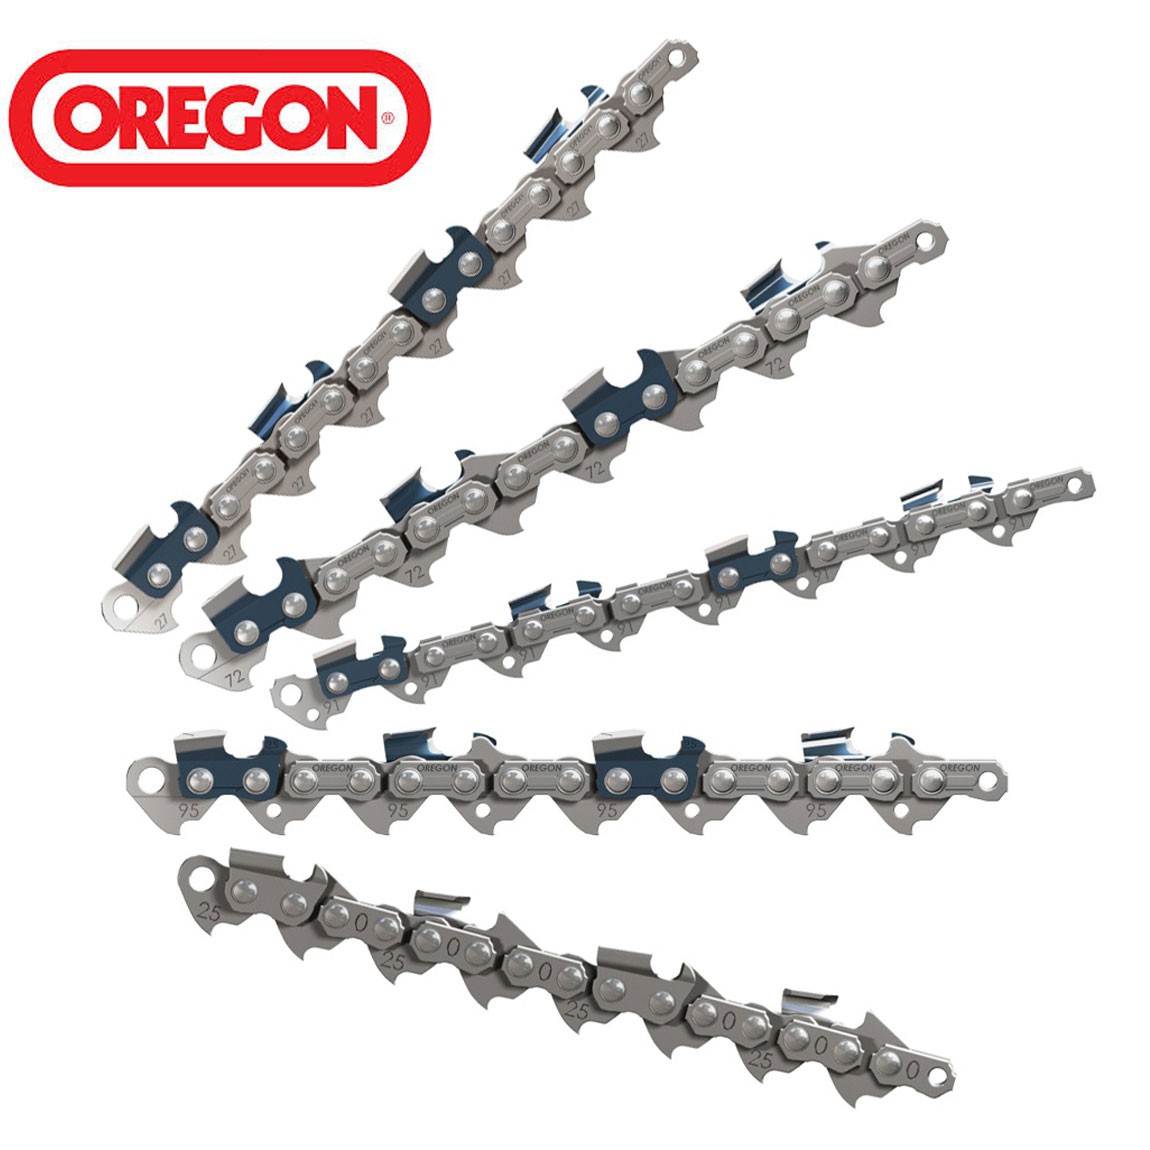 Guide chaîne tronçonneuse OREGON 208ATMD009 - 50 cm - JAUGE 1.5 mm - pas  3/8 - 72 maillons